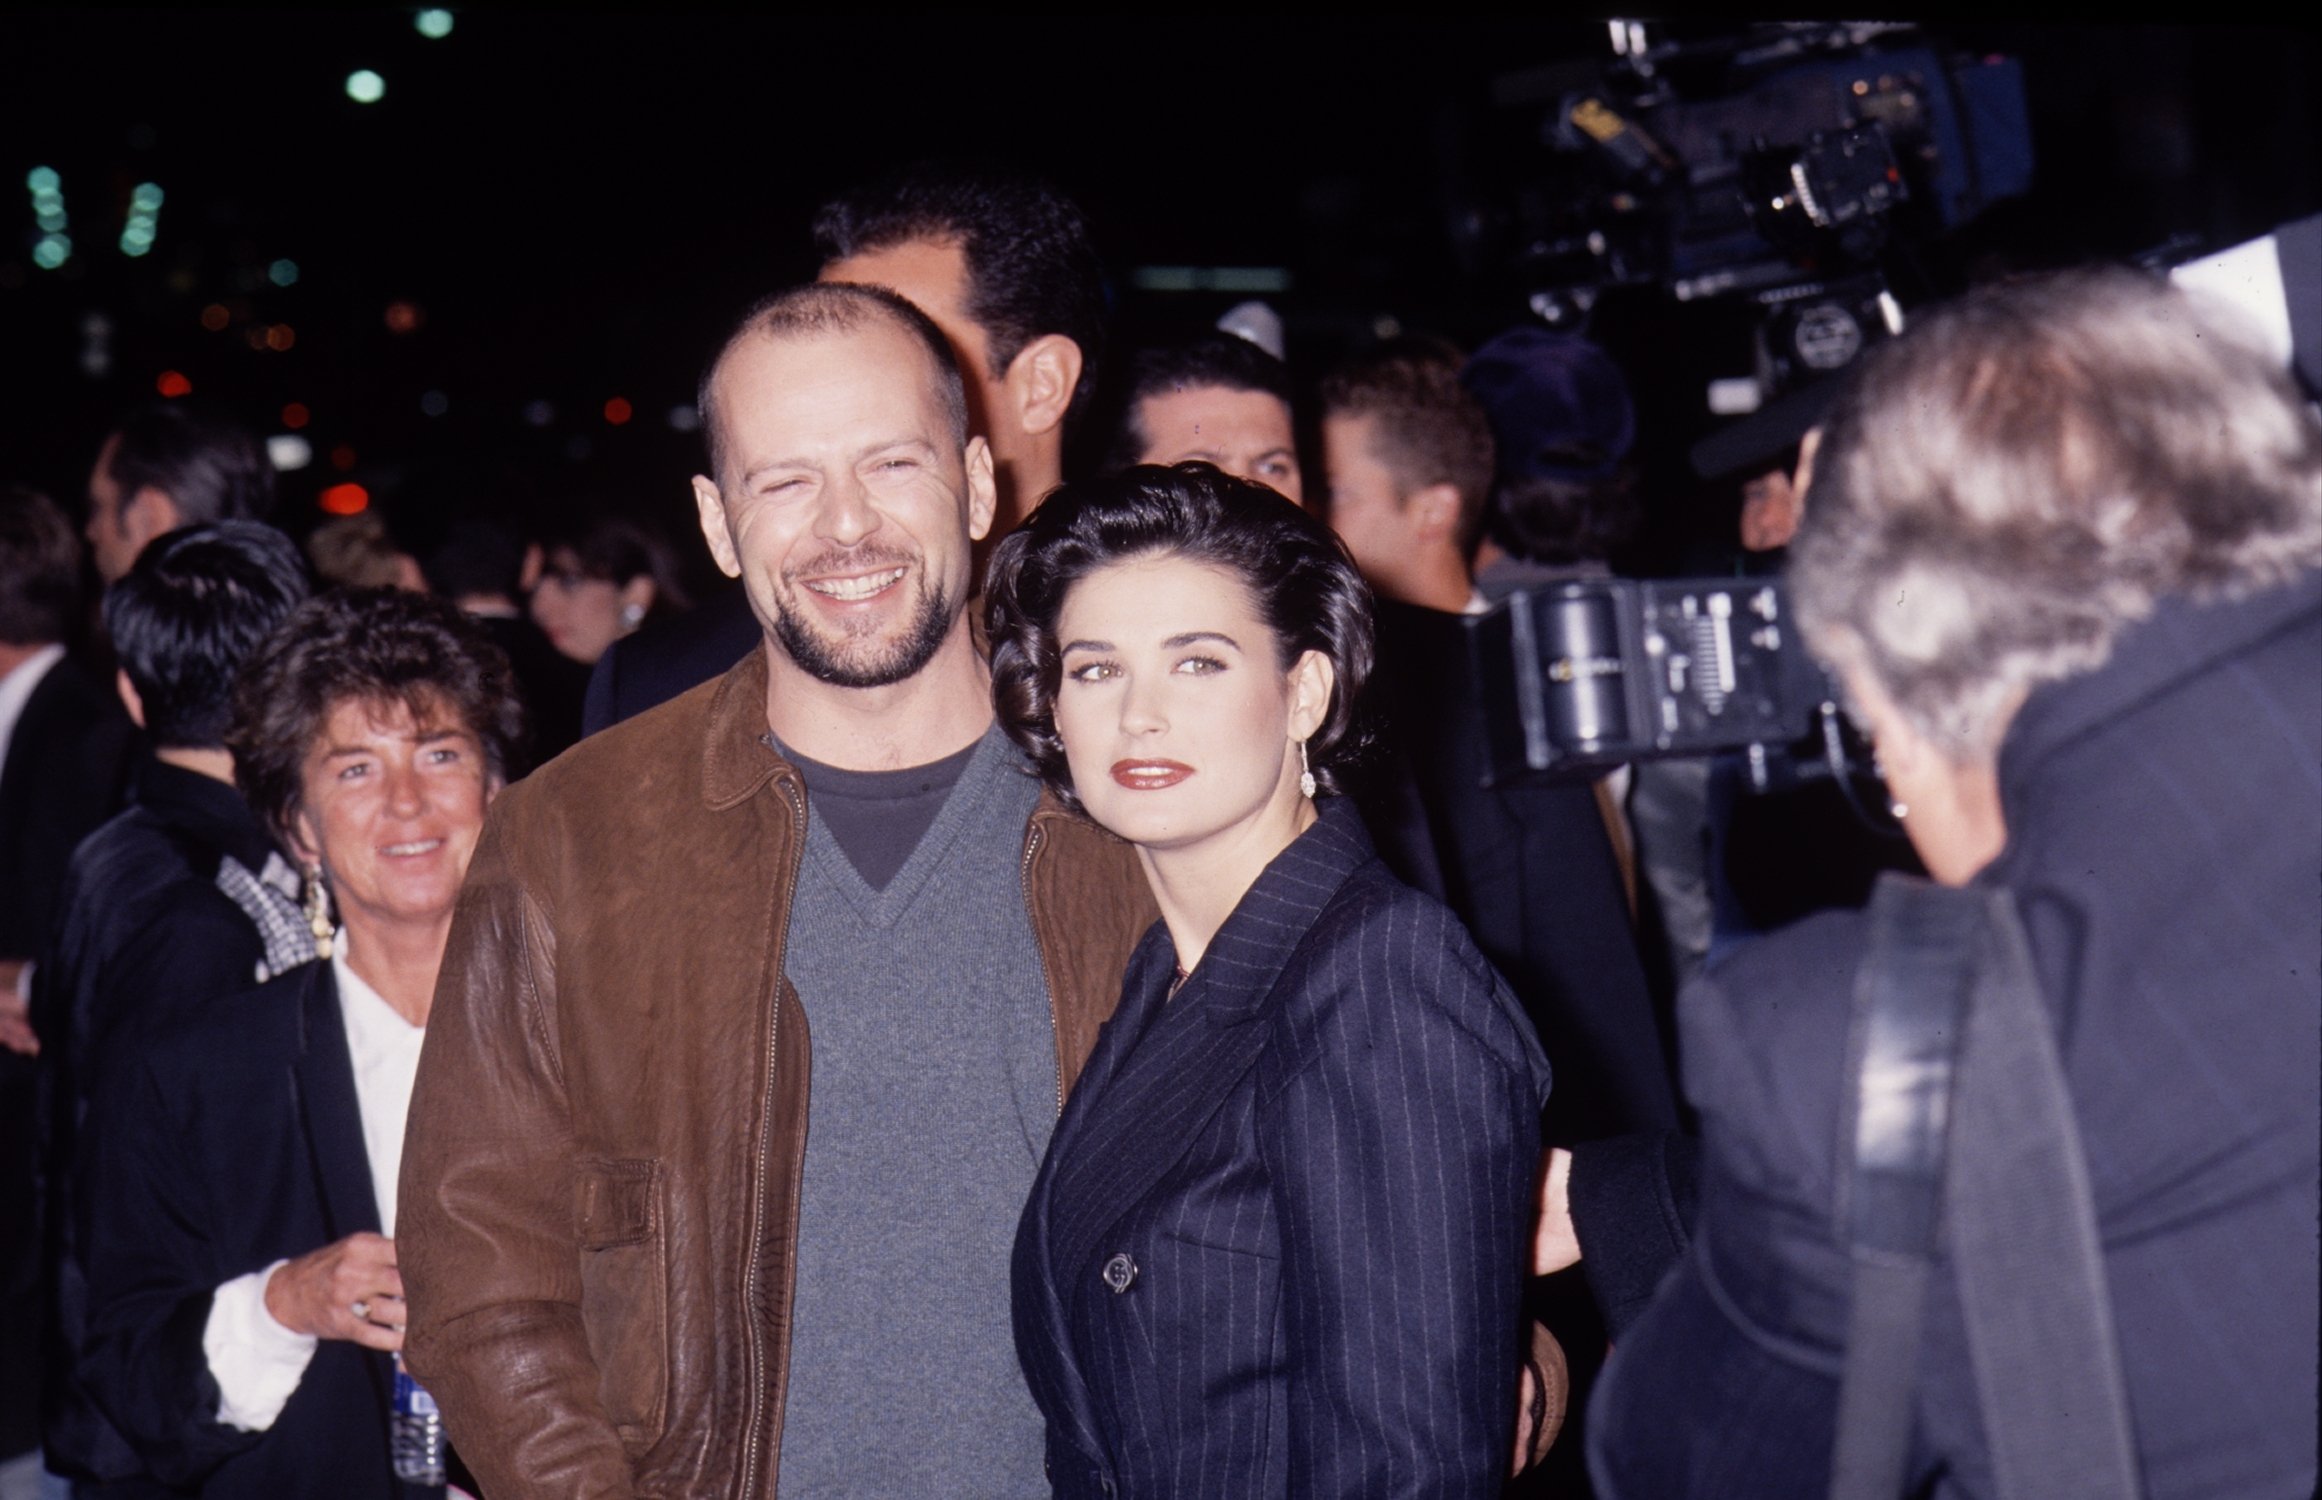 Bruce Willis et Demi Moore photographiés ensemble lors d'un événement pendant leur relation. | Photo : Getty Images